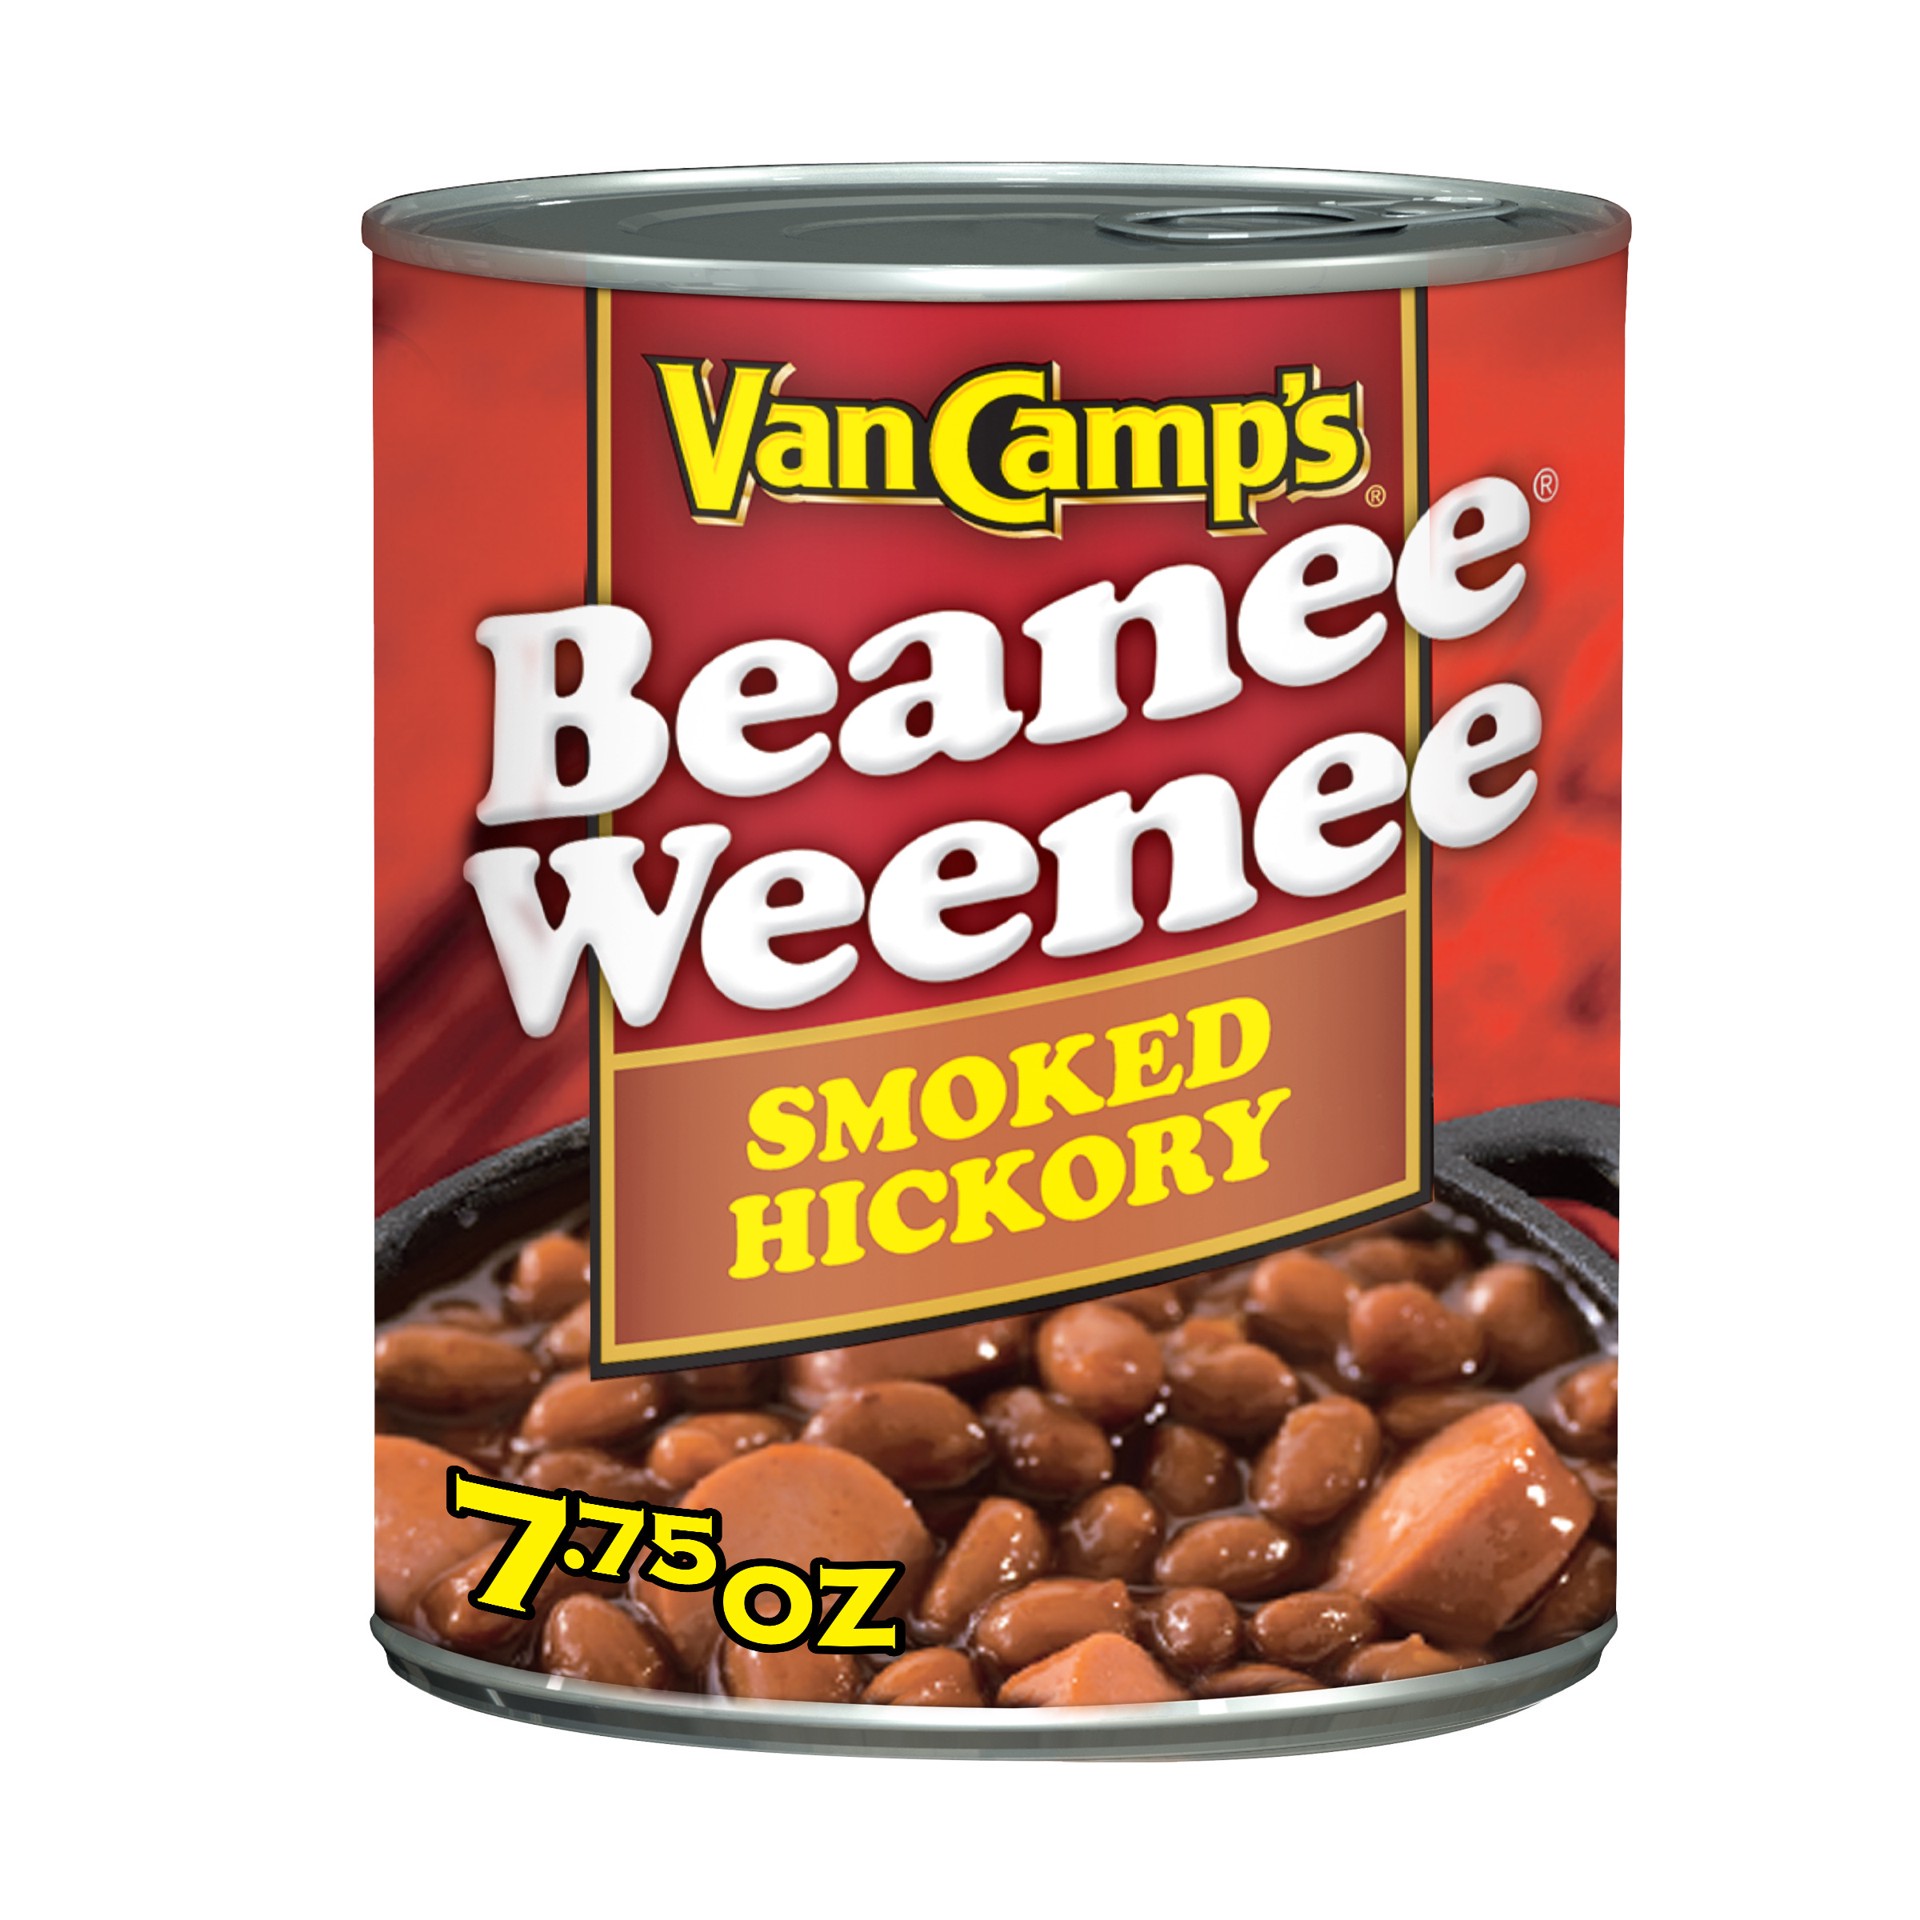 slide 1 of 4, Van Camp's Beanee Weenee 7.75 oz, 7.75 oz